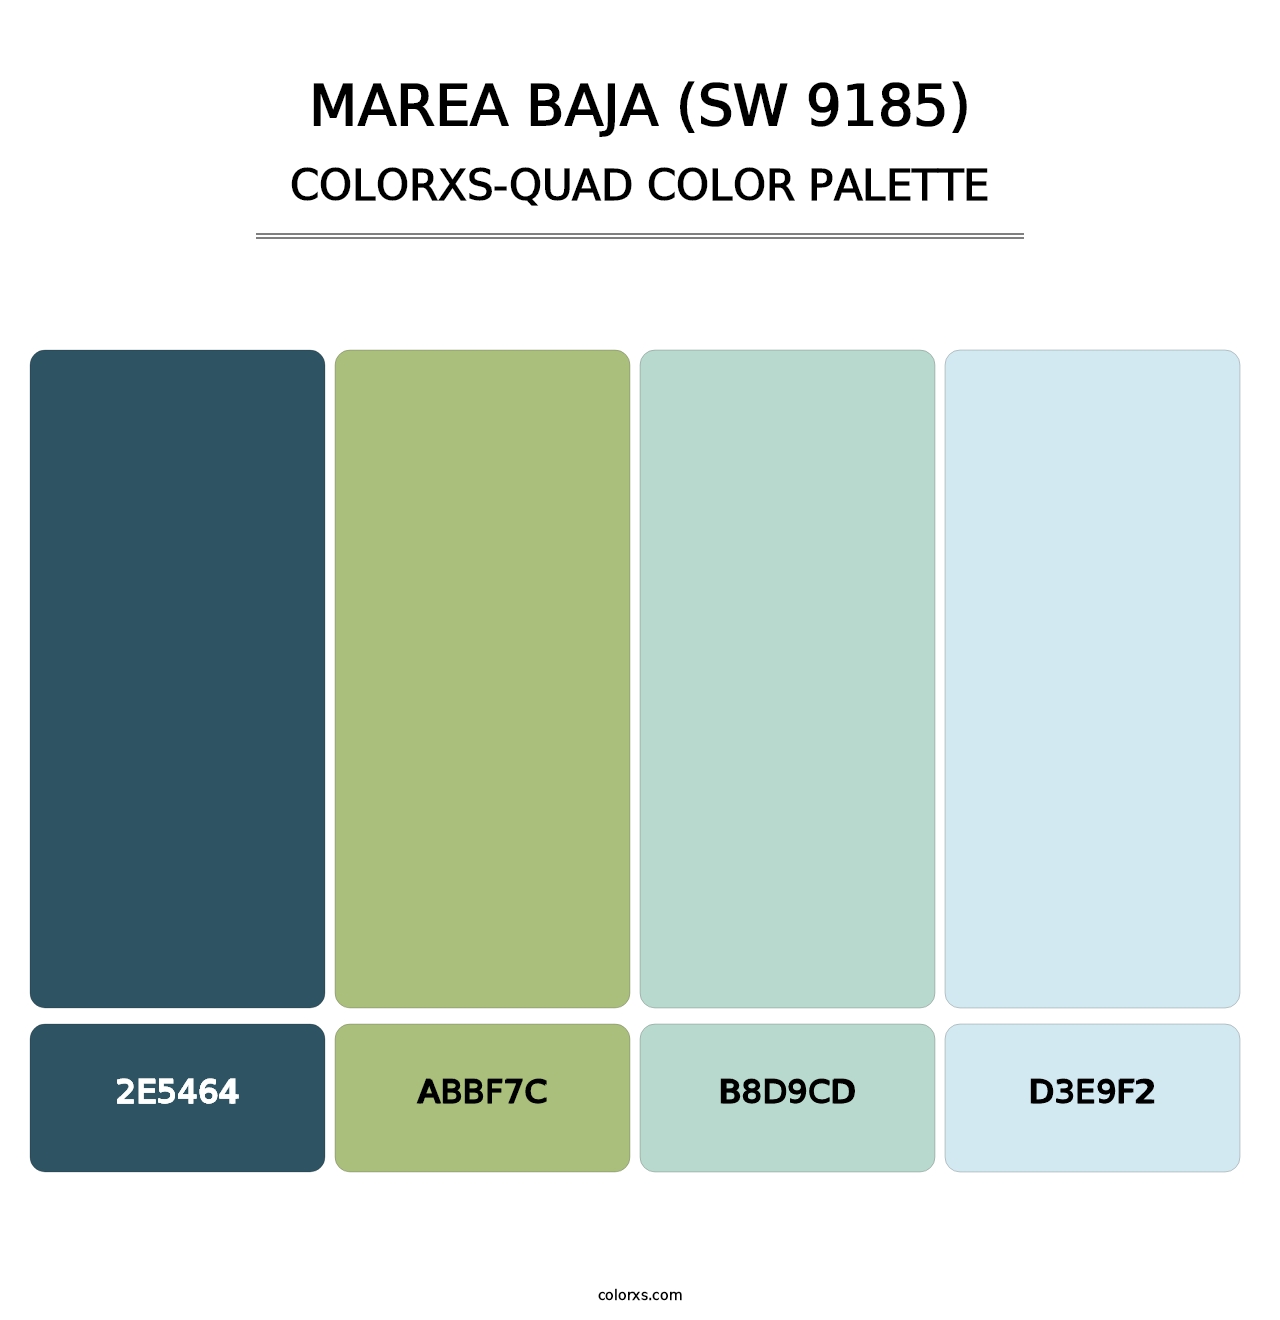 Marea Baja (SW 9185) - Colorxs Quad Palette